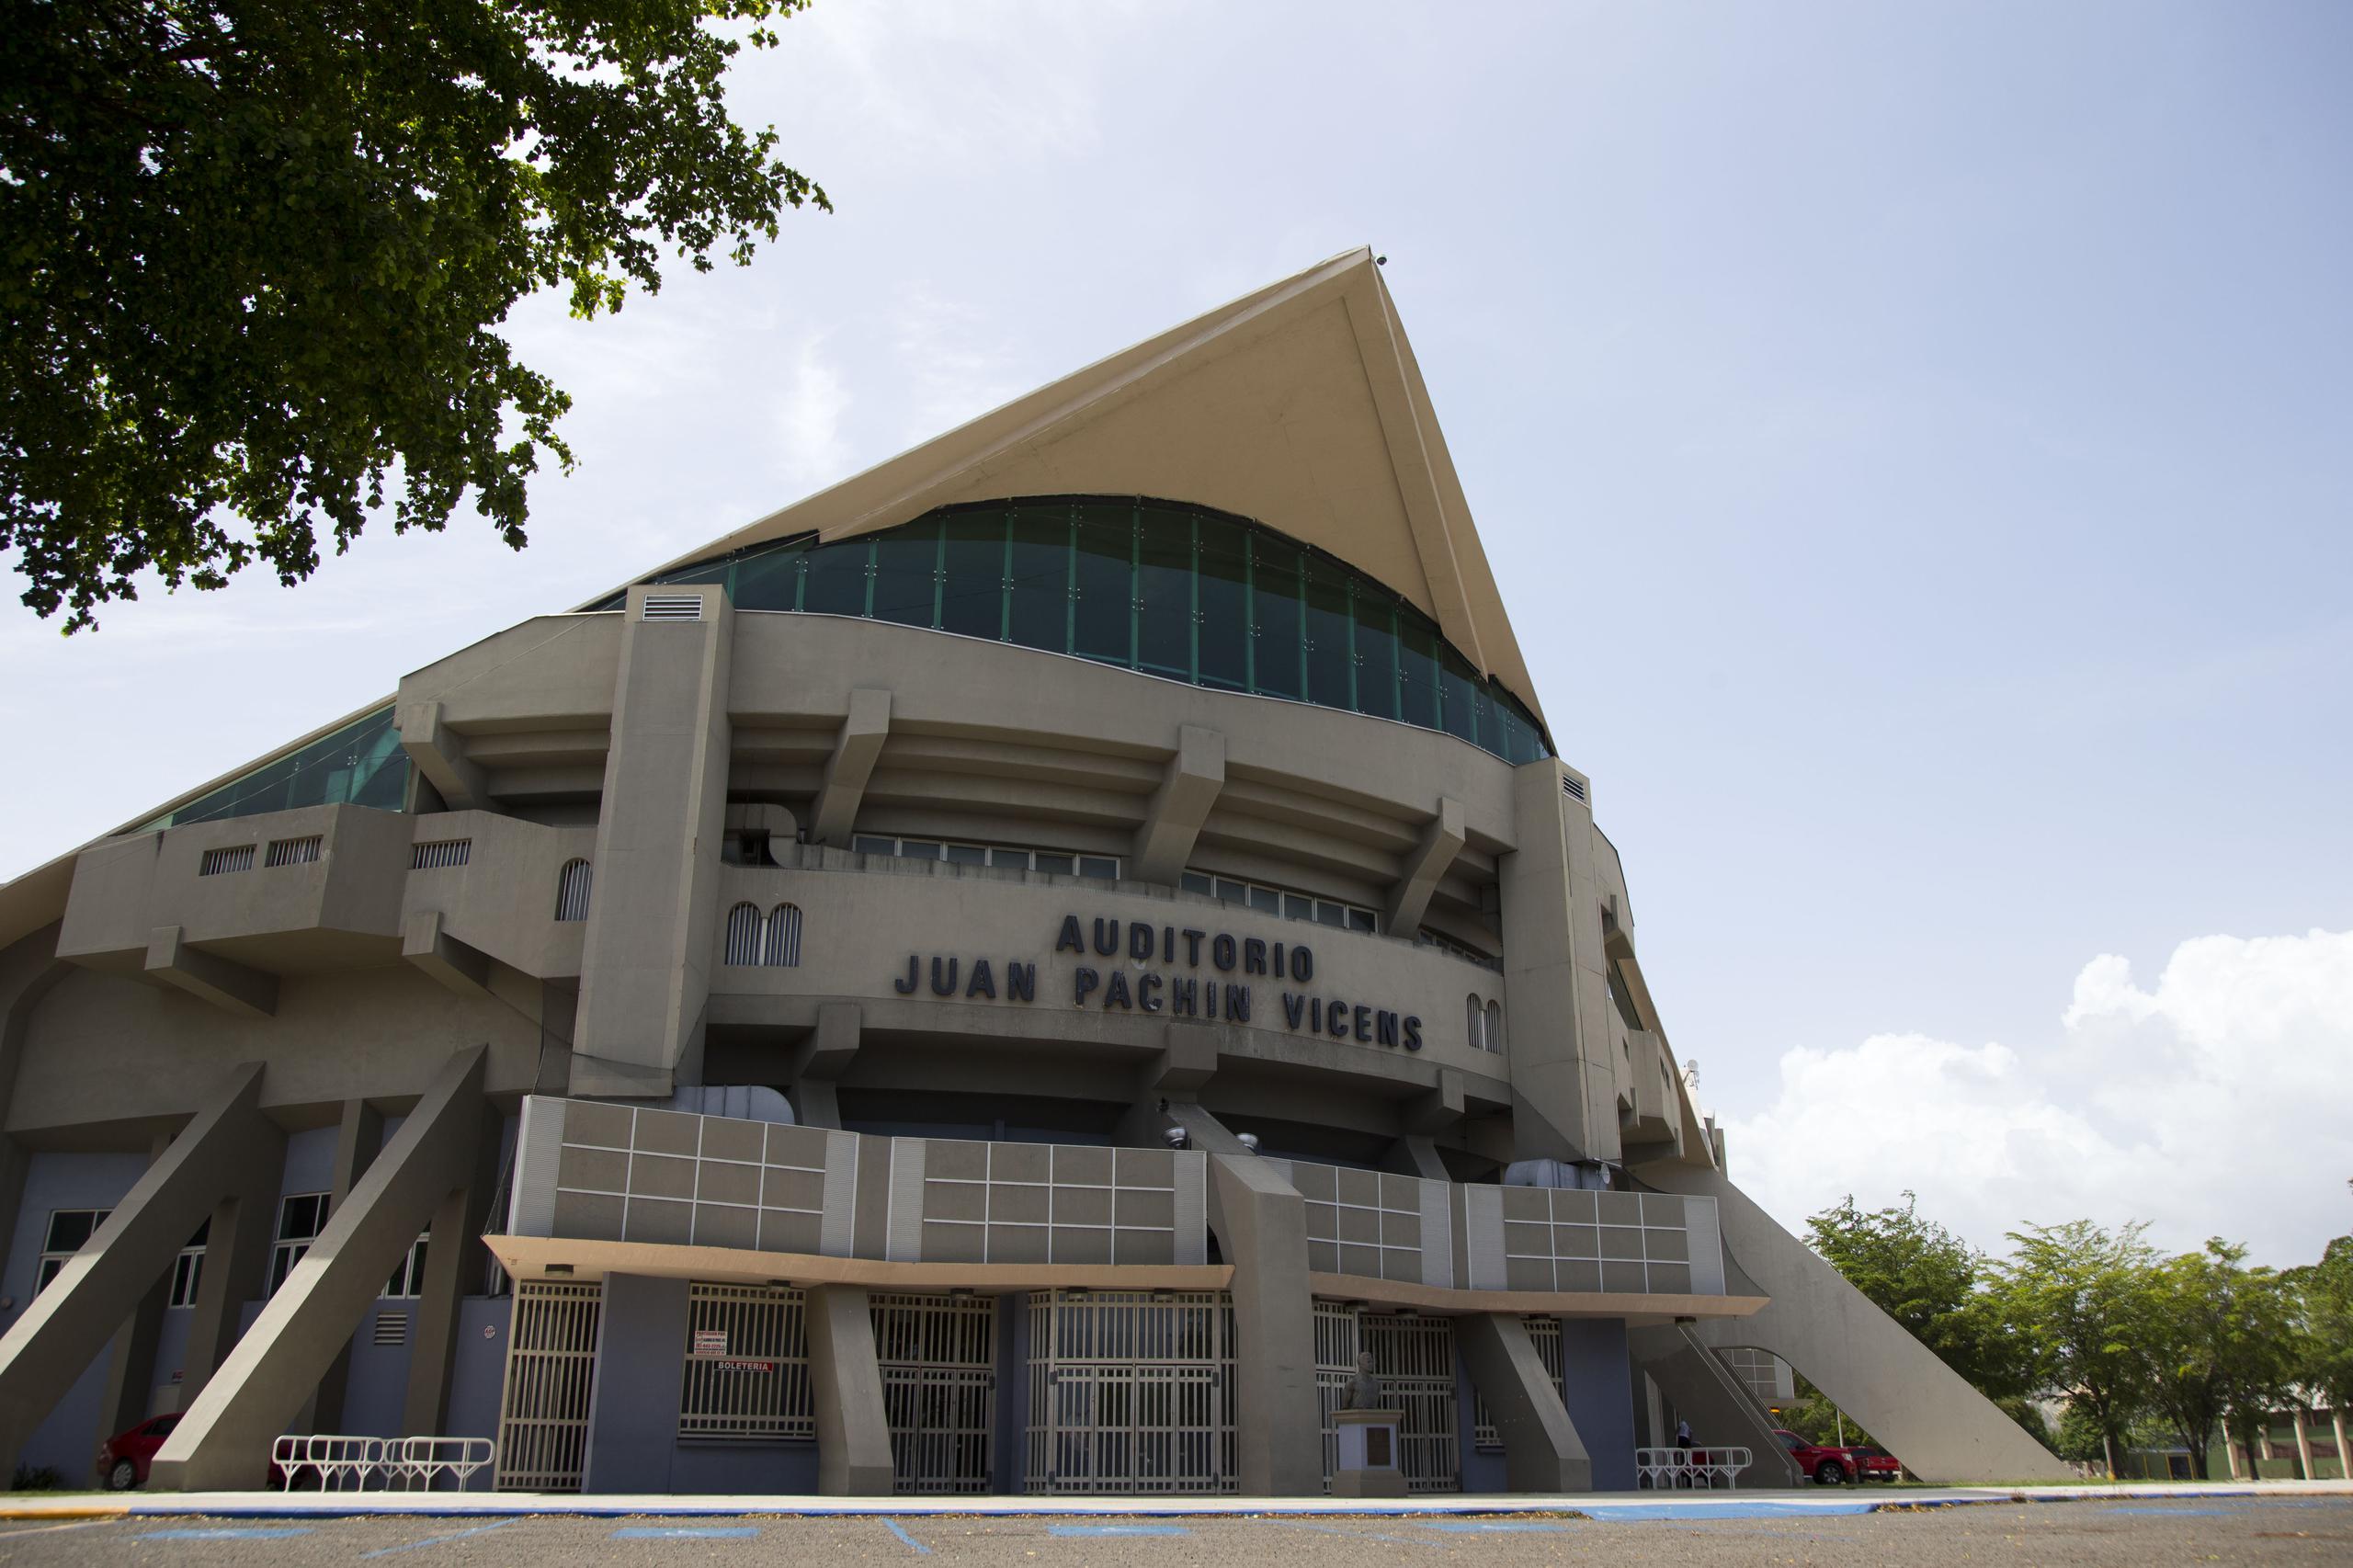 Al Auditorio Juan “Pachín” Vicens en Ponce se le aprobó una asignación de cerca de $1.7 millones para una renovación integral del edificio.